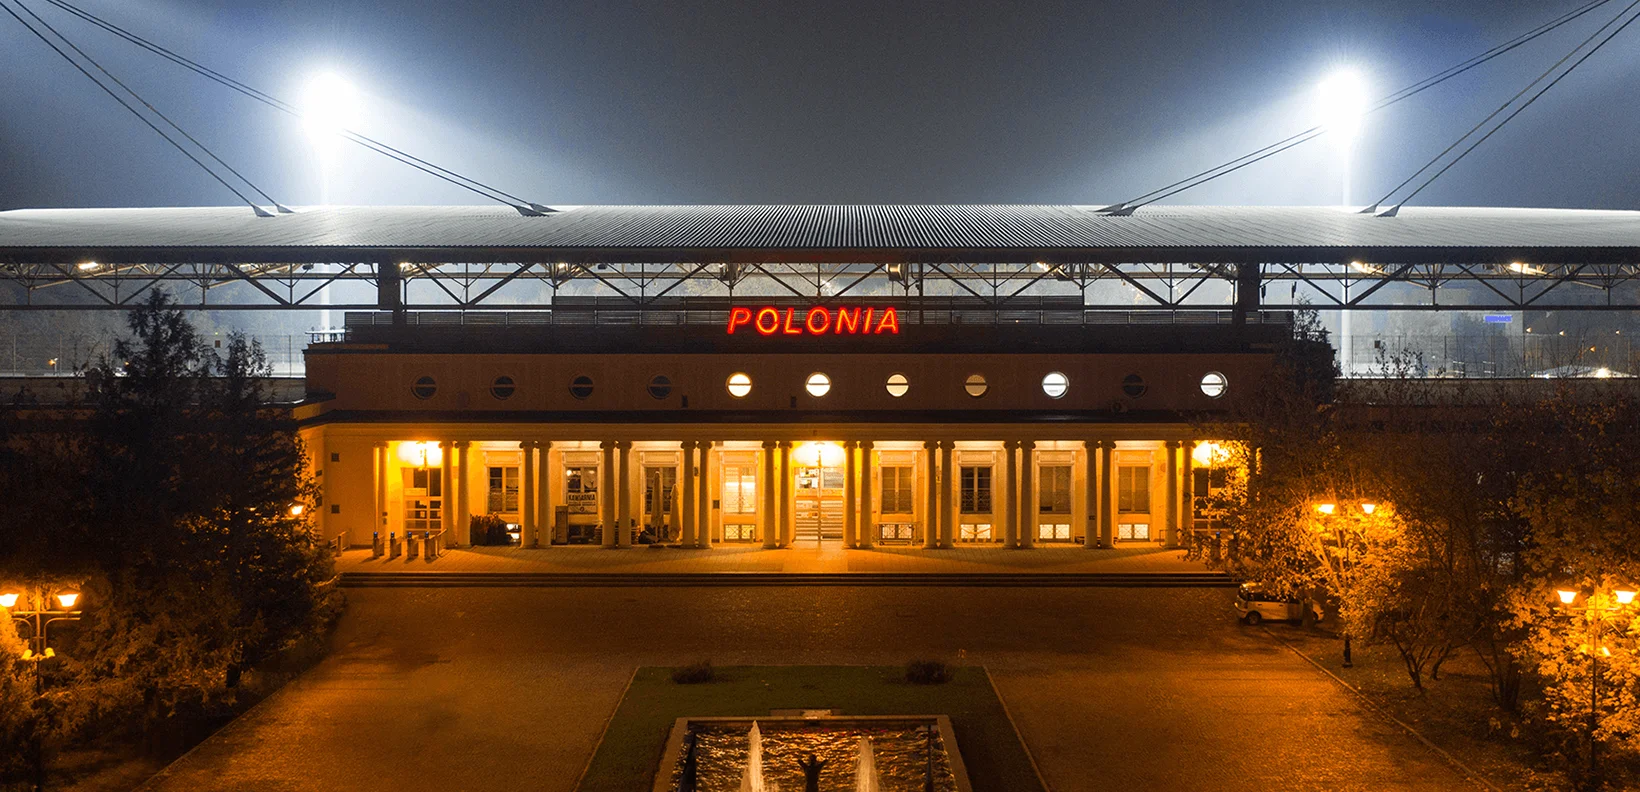 Otwarty Stadion - darmowe bilety na mecze Polonii Warszawa